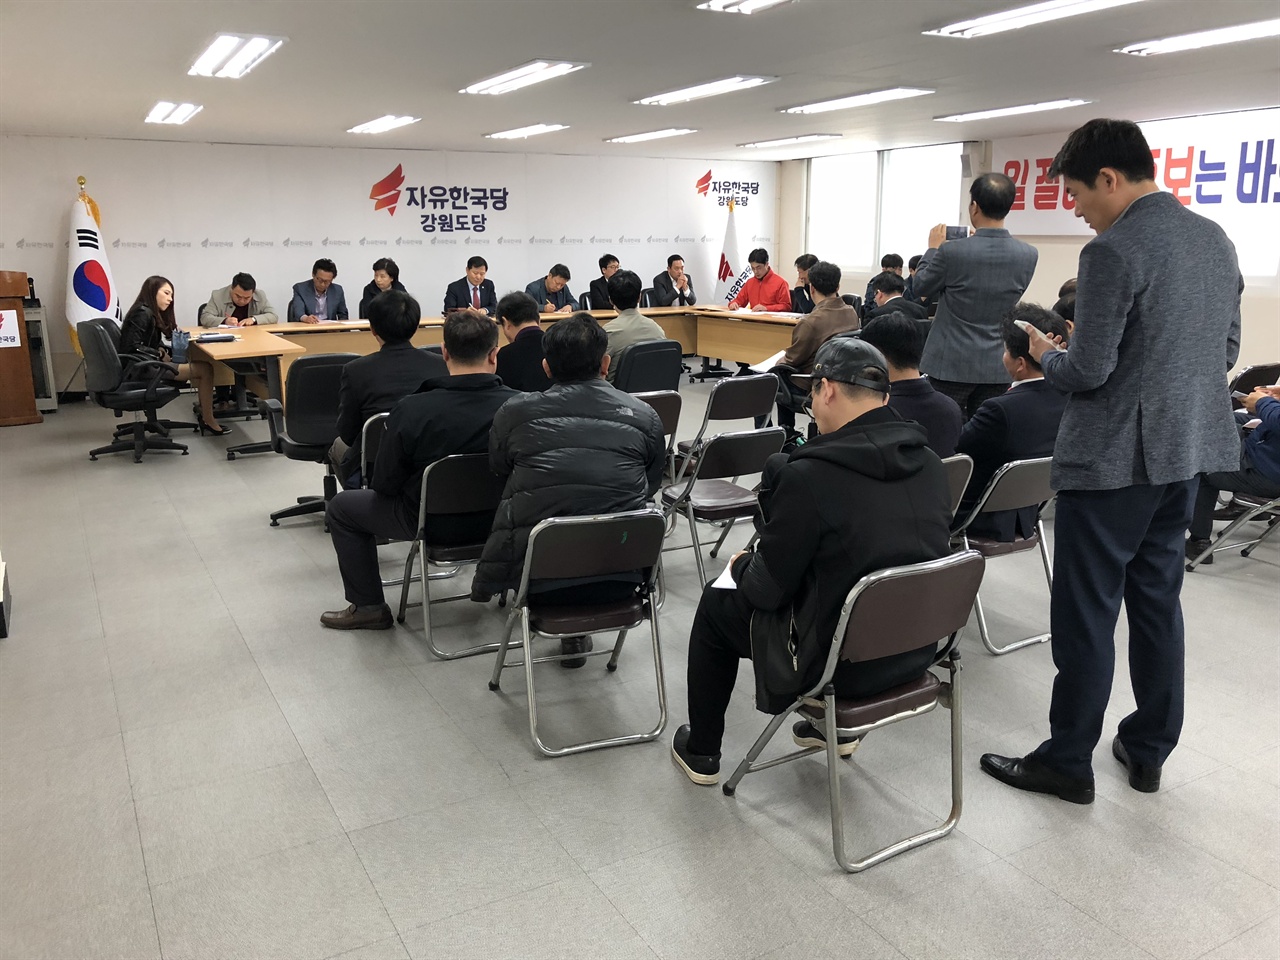 자유한국당 강원도당이 지방선거와 관련해 공천자 명단을 발표하고 있다.